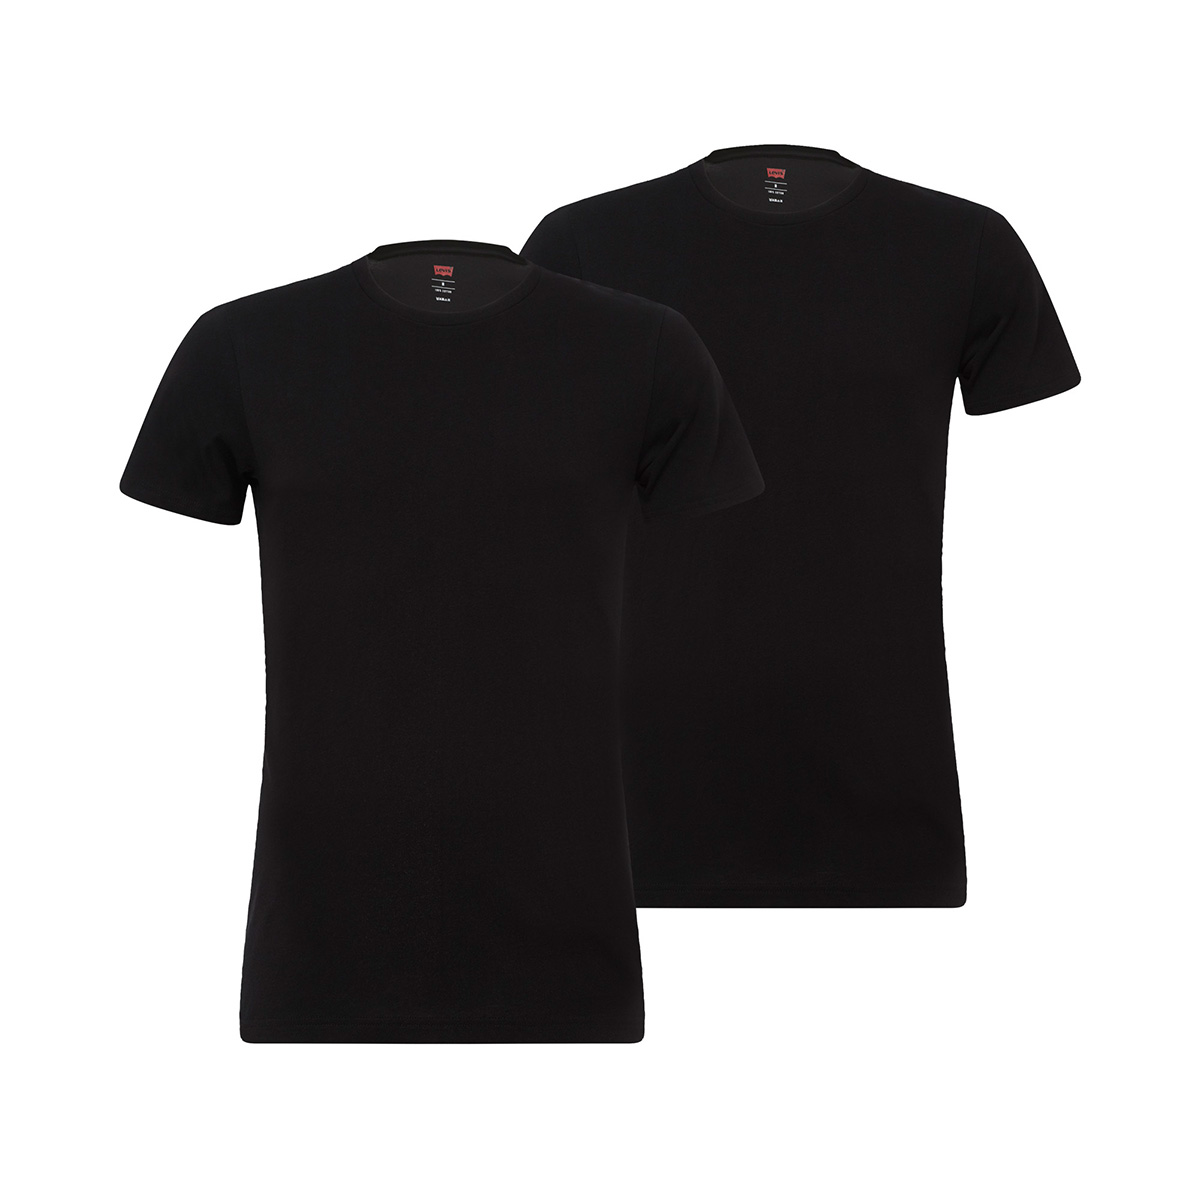 Levi's Herren Levis Men SOLID Crew 2P T-Shirt, Schwarz (Jet Black 884), Medium (Herstellergröße: 020) (2er Pack)